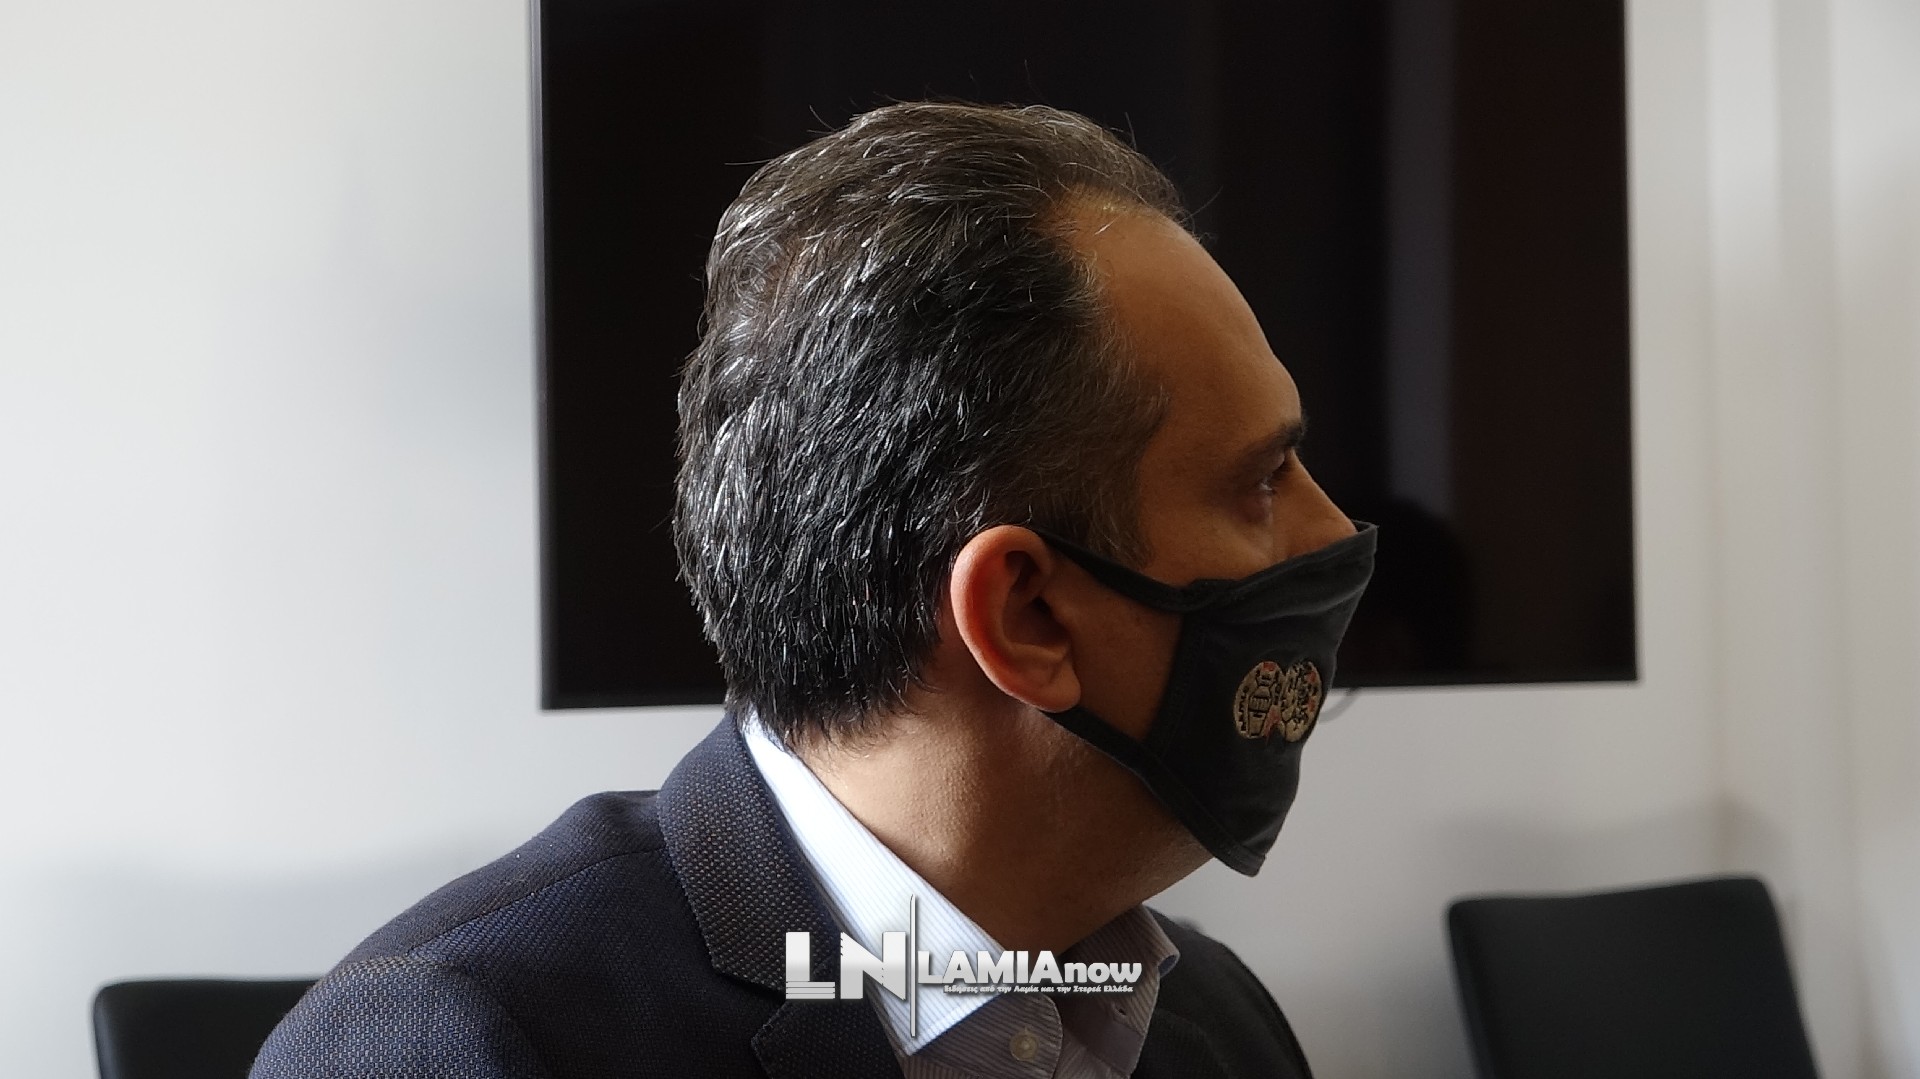 , Λαμία: Σύσκεψη με τον λοιμοξιολόγο Θανάση Σκουτέλη στο δημαρχείο &#8211; Το καμπανάκι και τι αποφασίστηκε (Βίντεo)